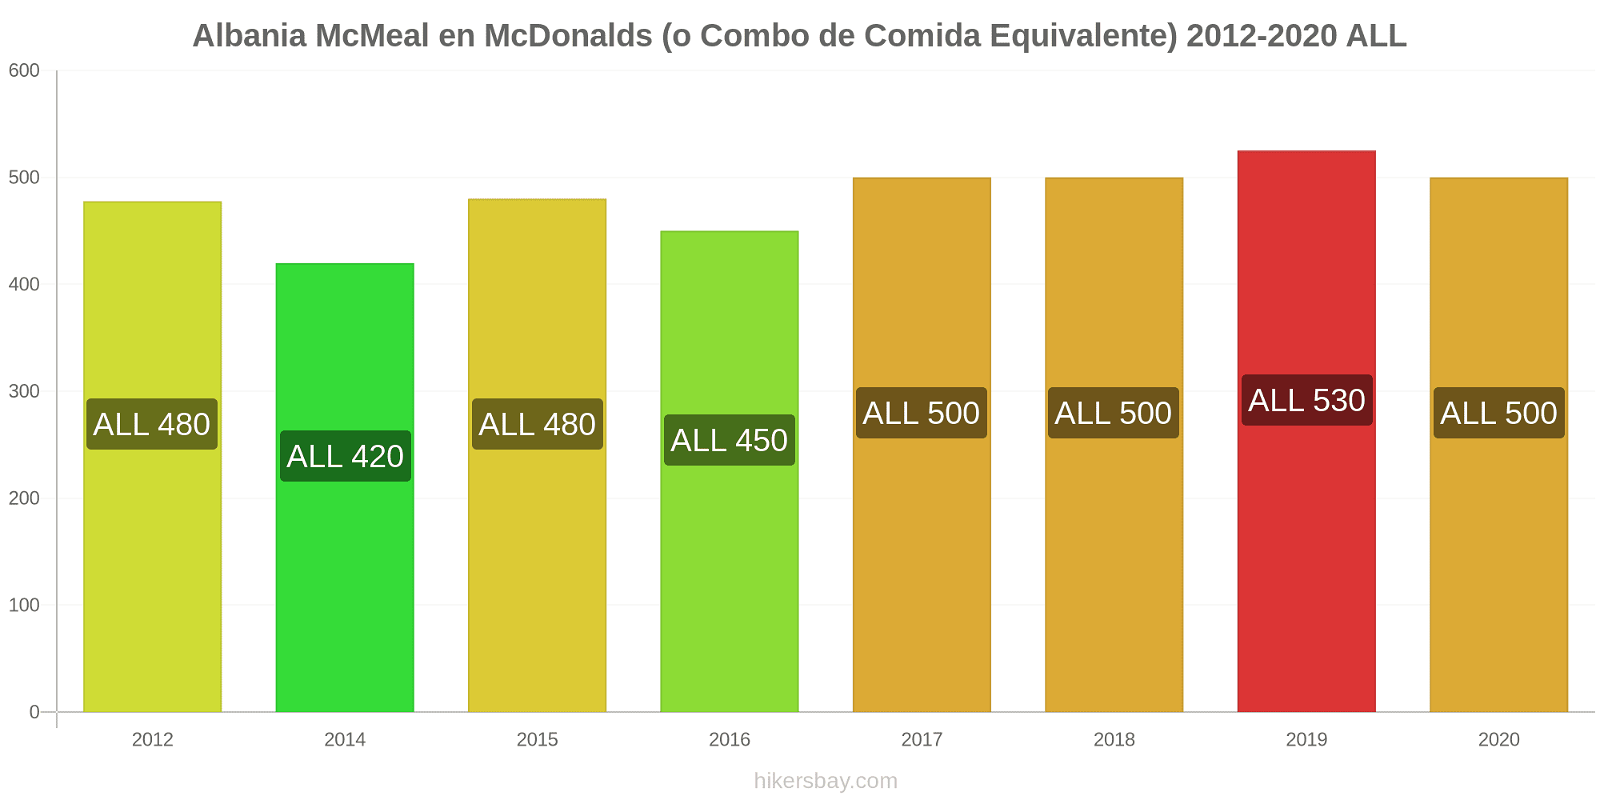 Albania cambios de precios McMeal en McDonalds (o menú equivalente) hikersbay.com